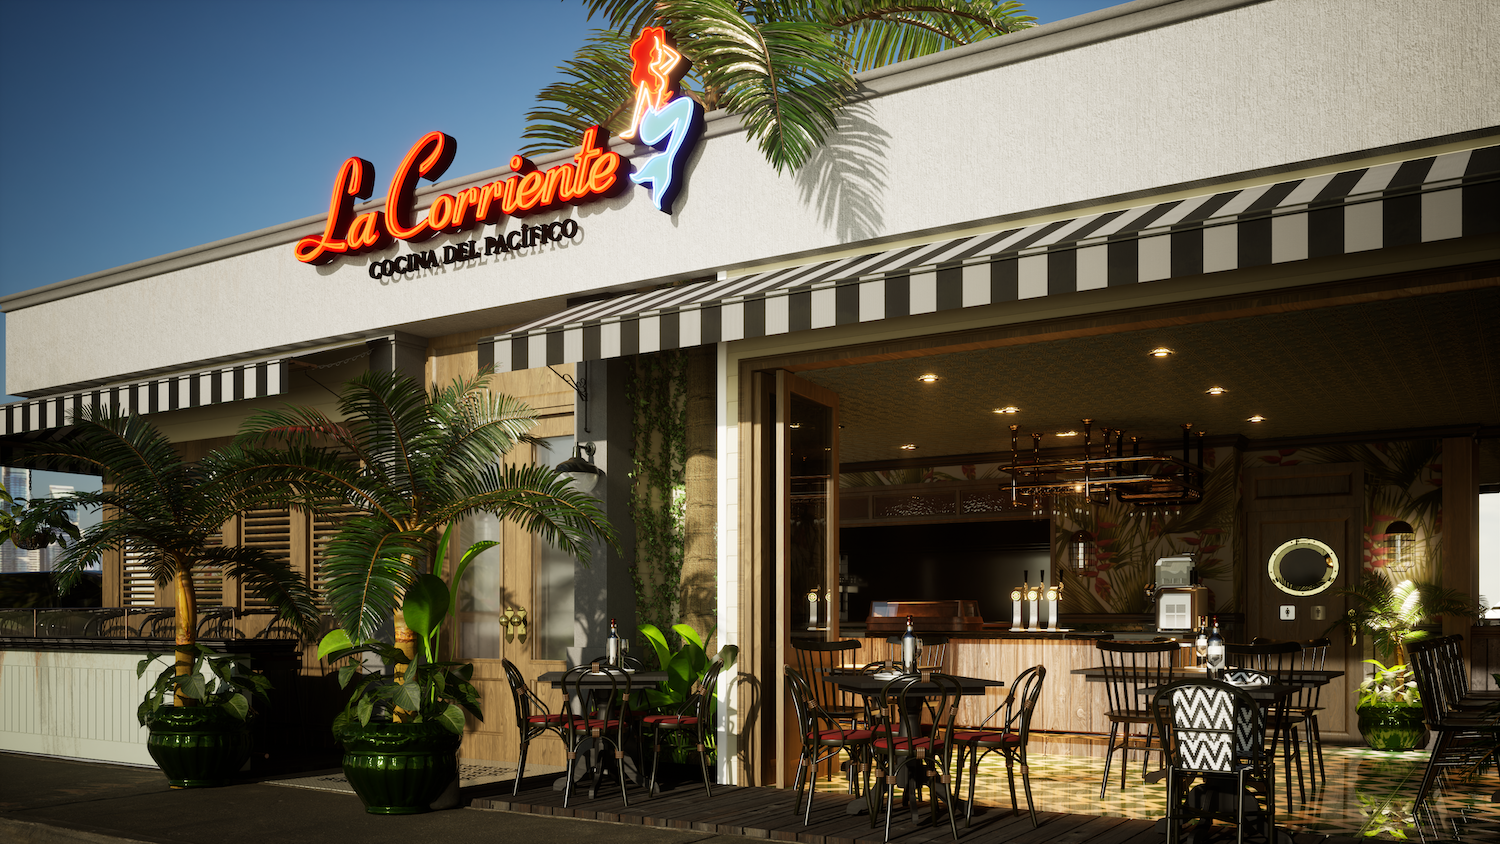 La Corriente Cocina del Pacifico Mexican seafood restaurant opening in La Jolla, San Diego this year